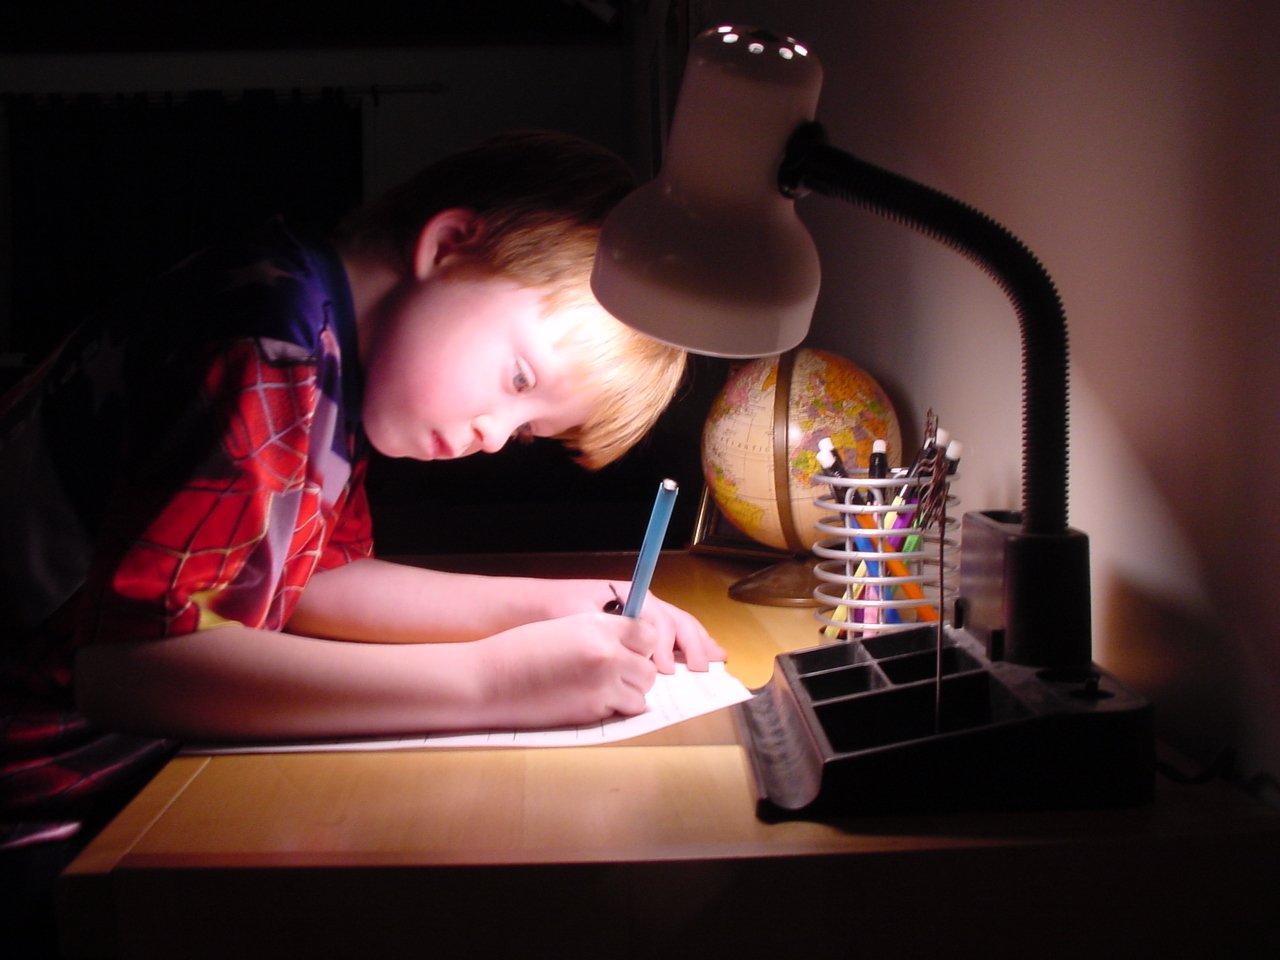 Скучные предметы. Doing homework. Children write homework at Night. Картинка вечернее время для подростка. Синдром отличницы.